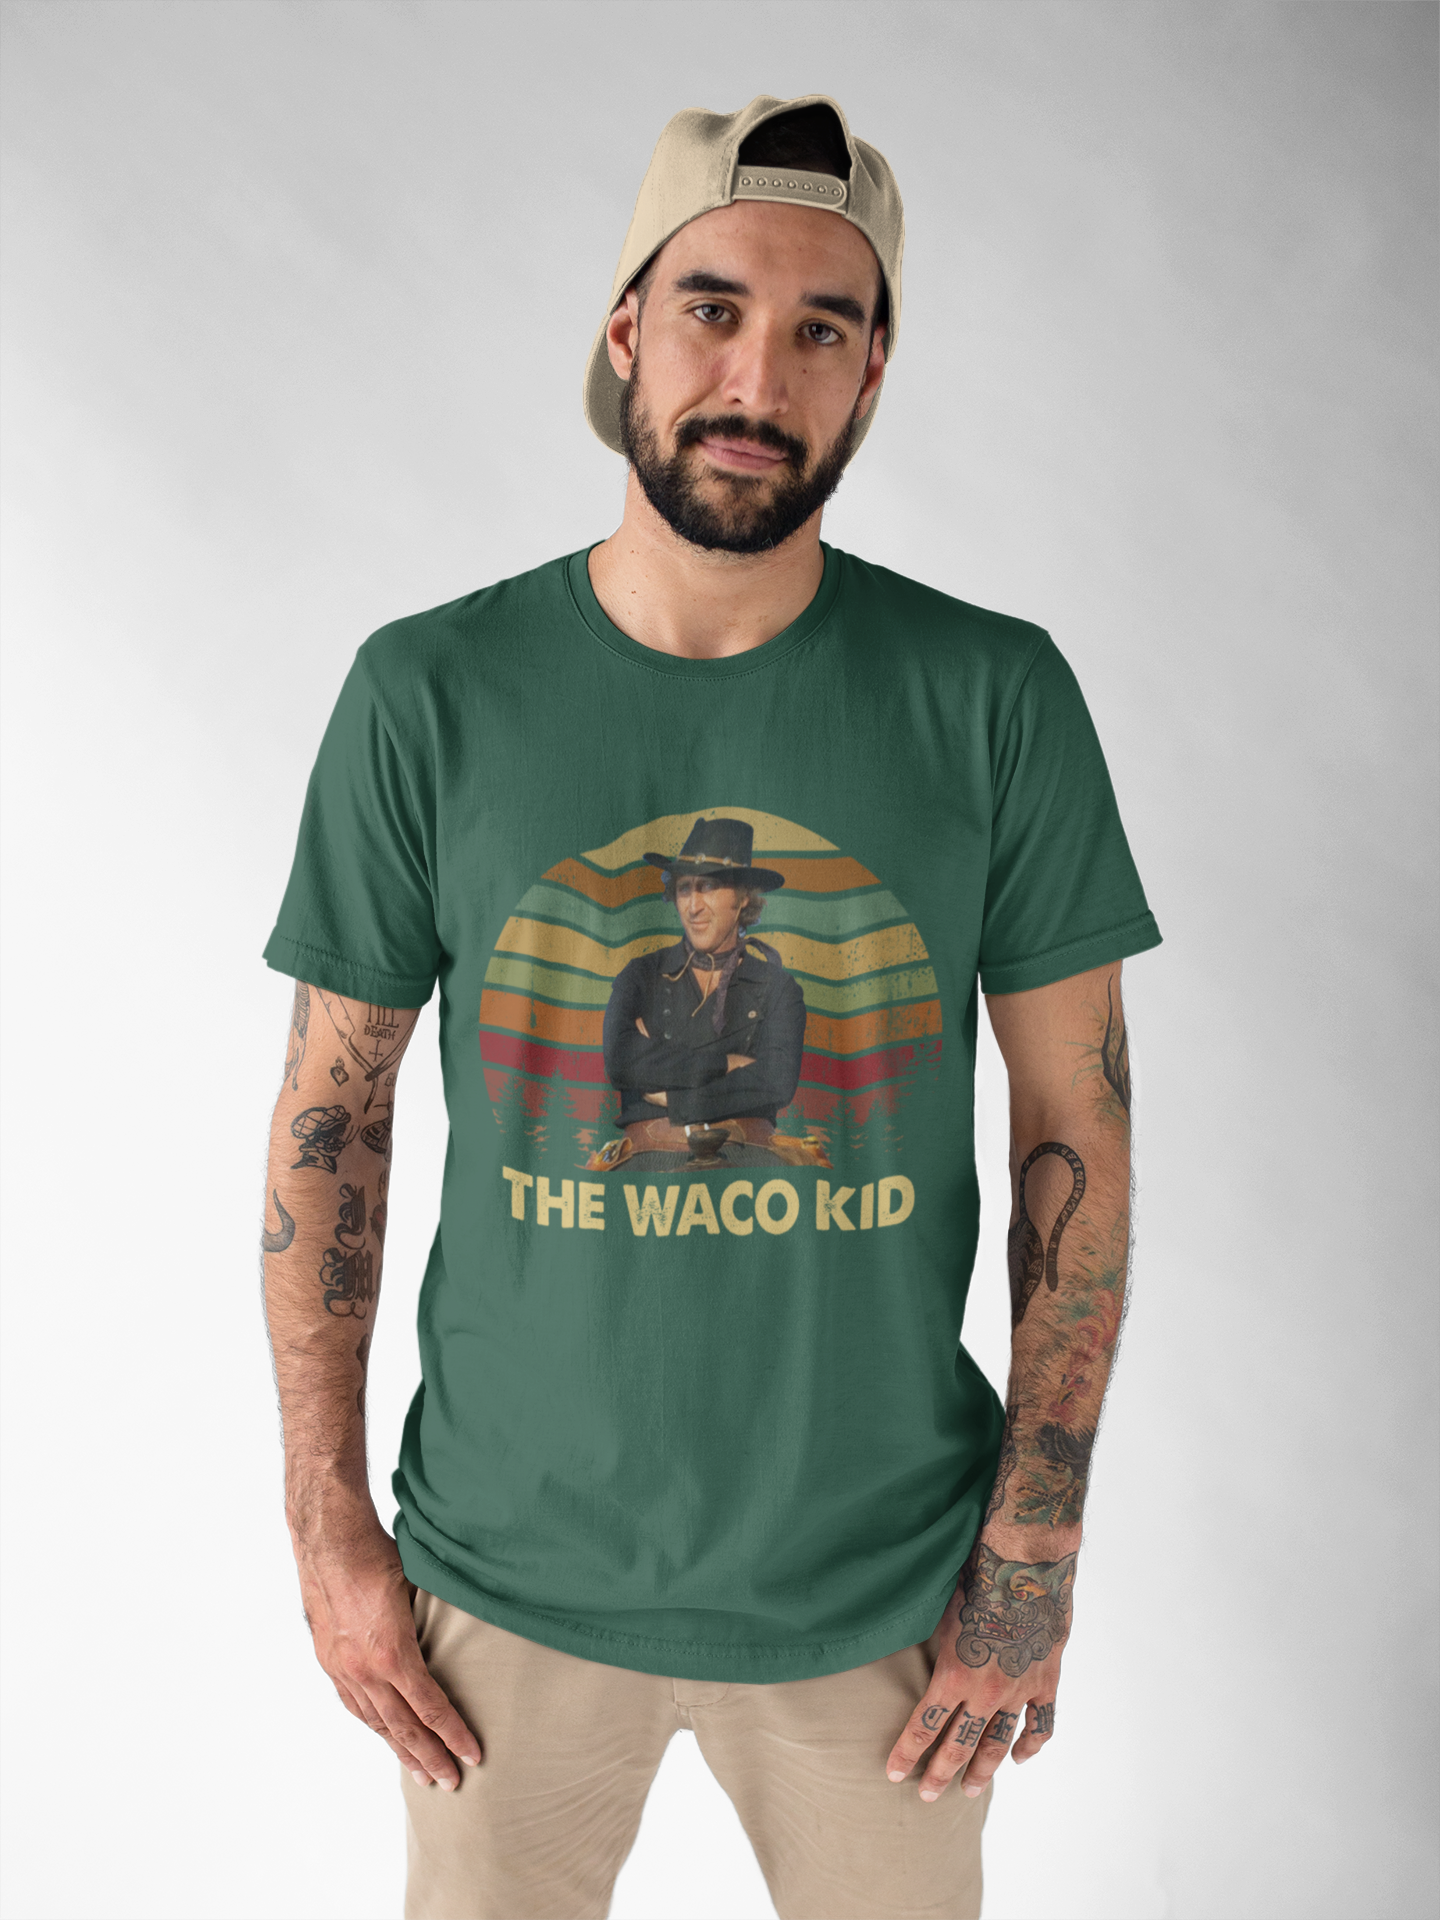 Blazing Saddles Movie T Shirt, Jim T Shirt, The Waco Kid Tshirt